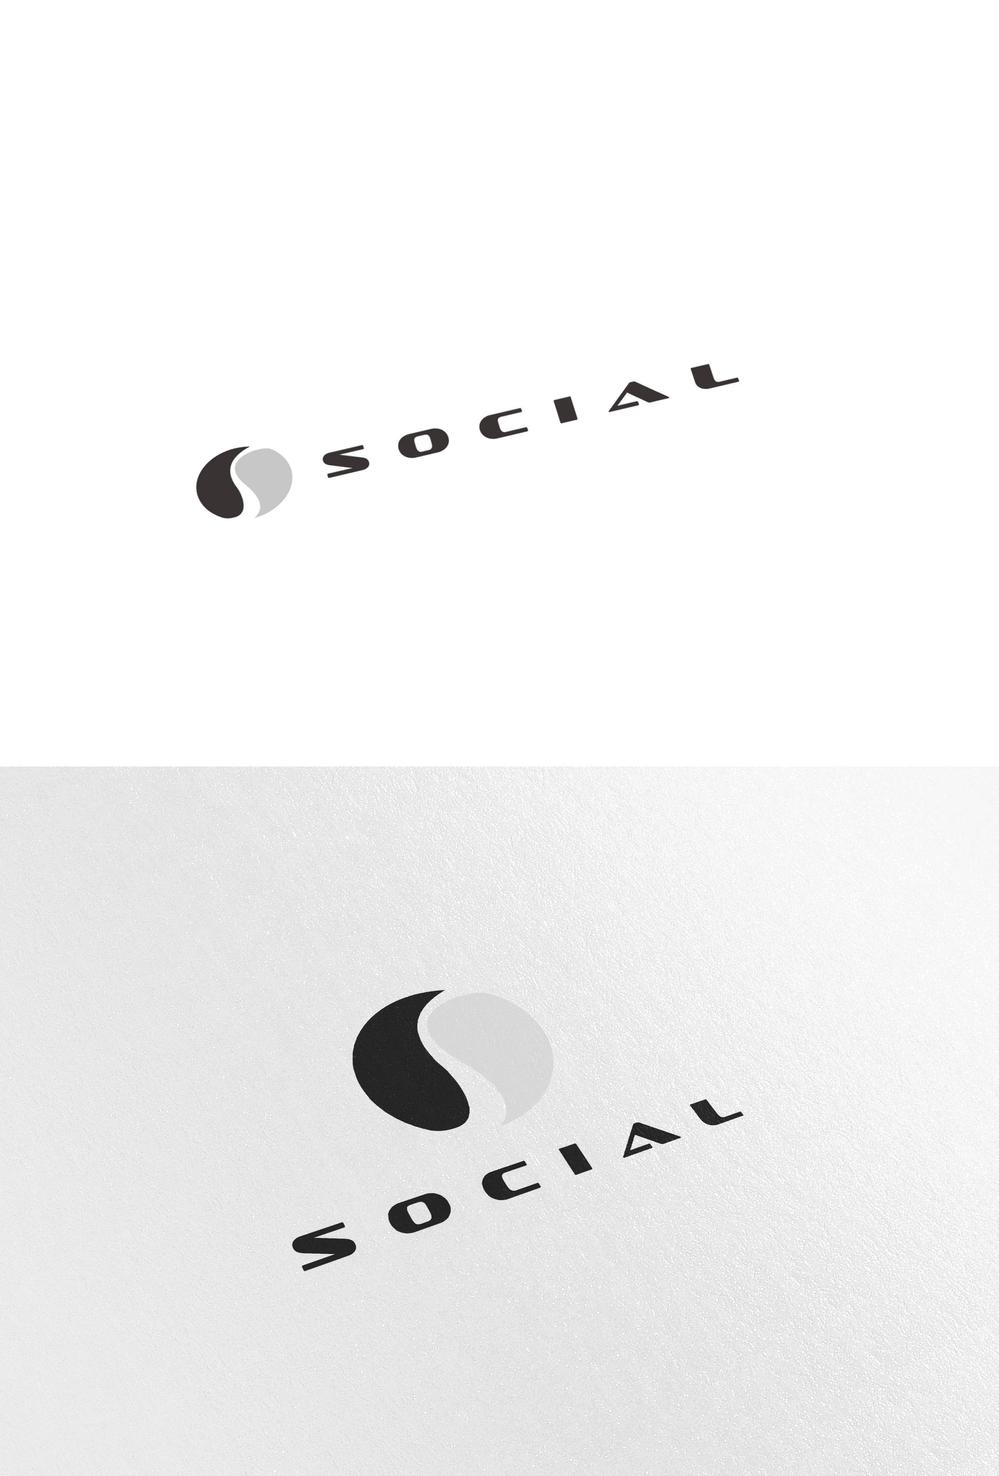 株式会社「ソーシャル」のロゴ